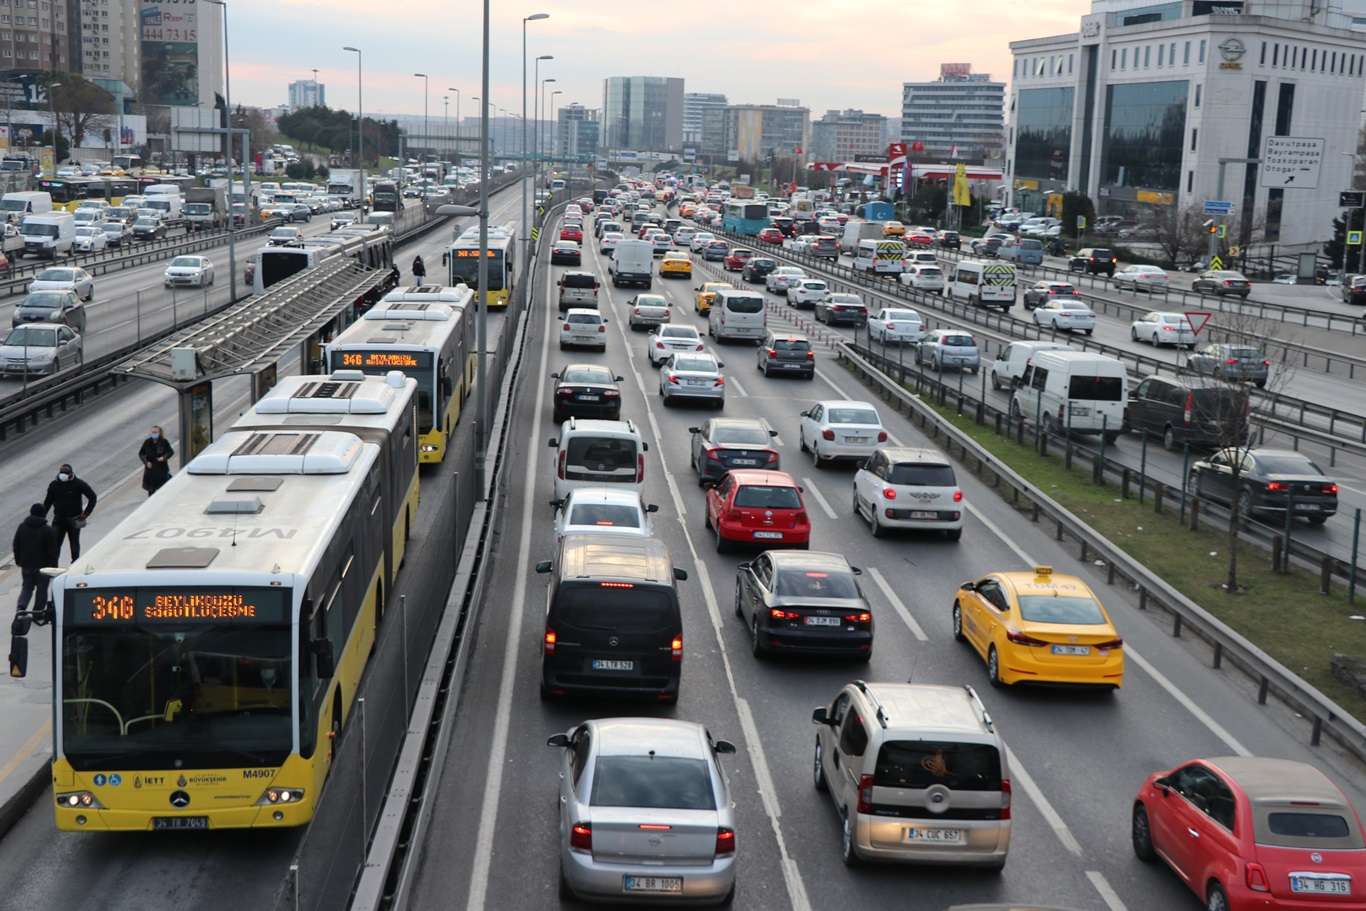  İstanbul'da haftanın son iş gününde trafik yoğunluğu oluştu